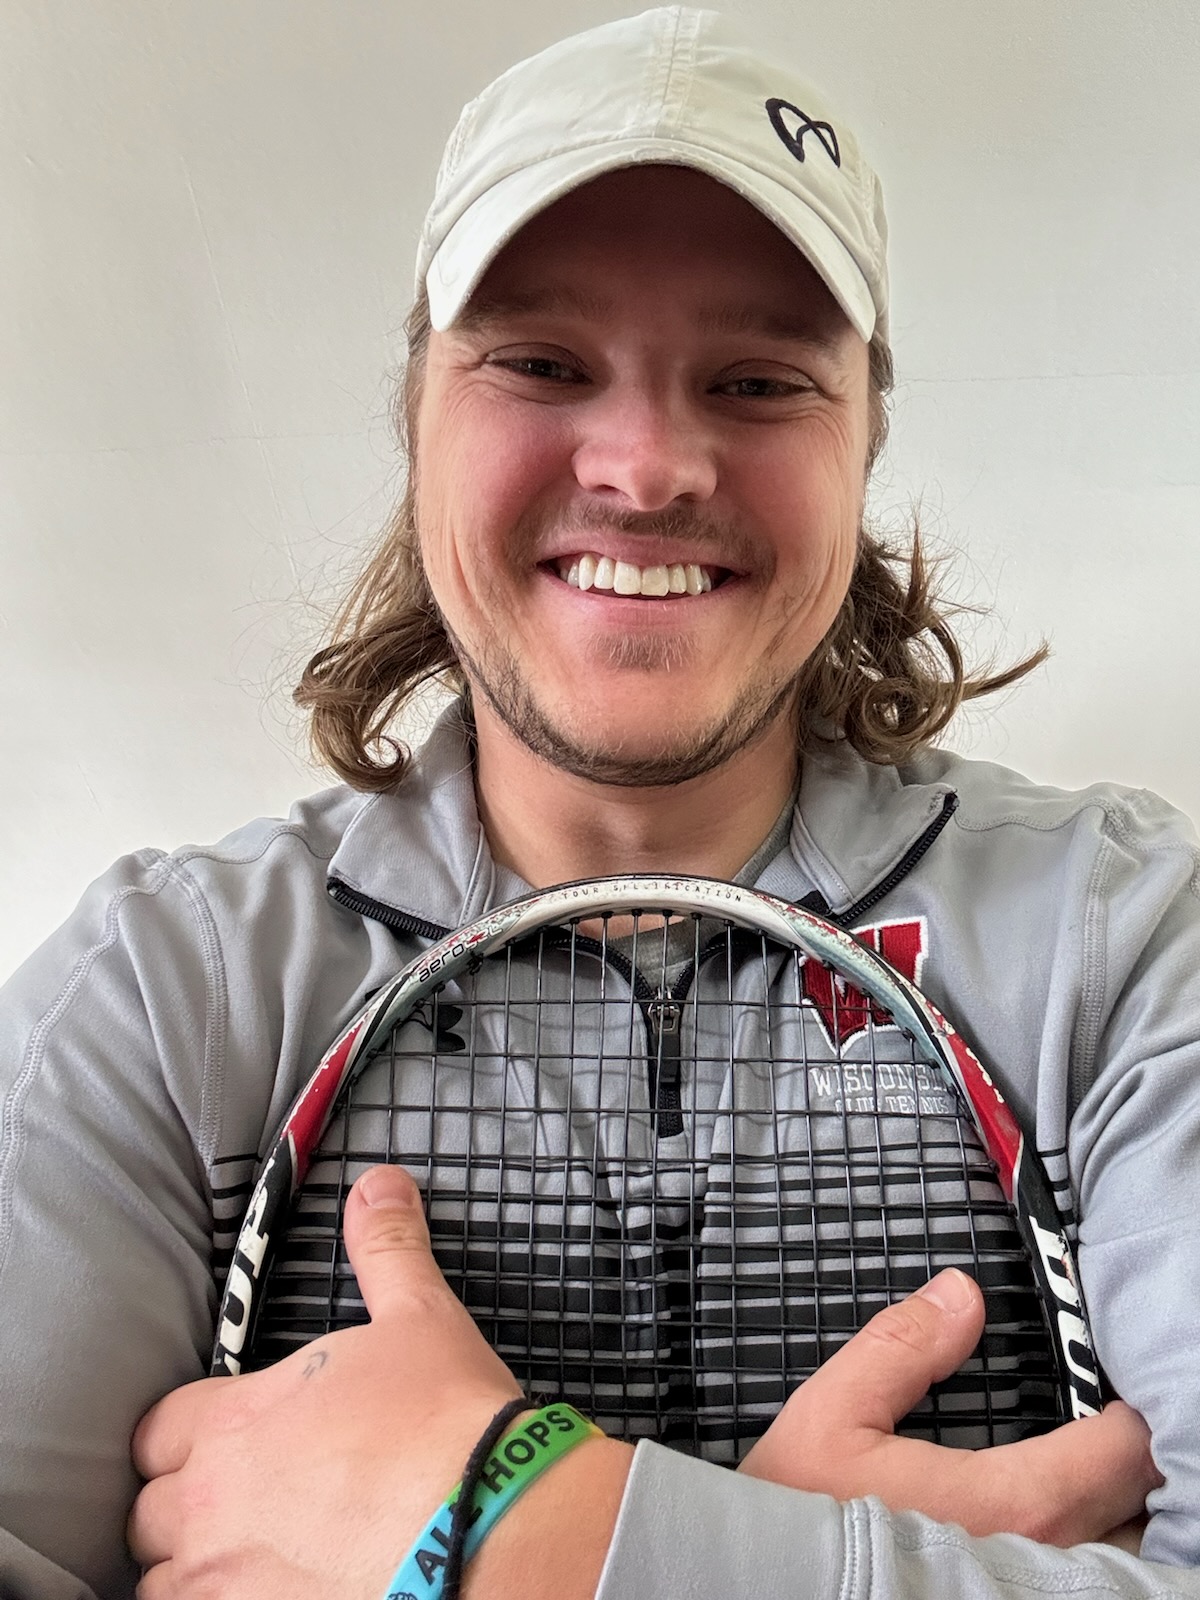 Chandler C. teaches tennis lessons in Salt Lake City, UT